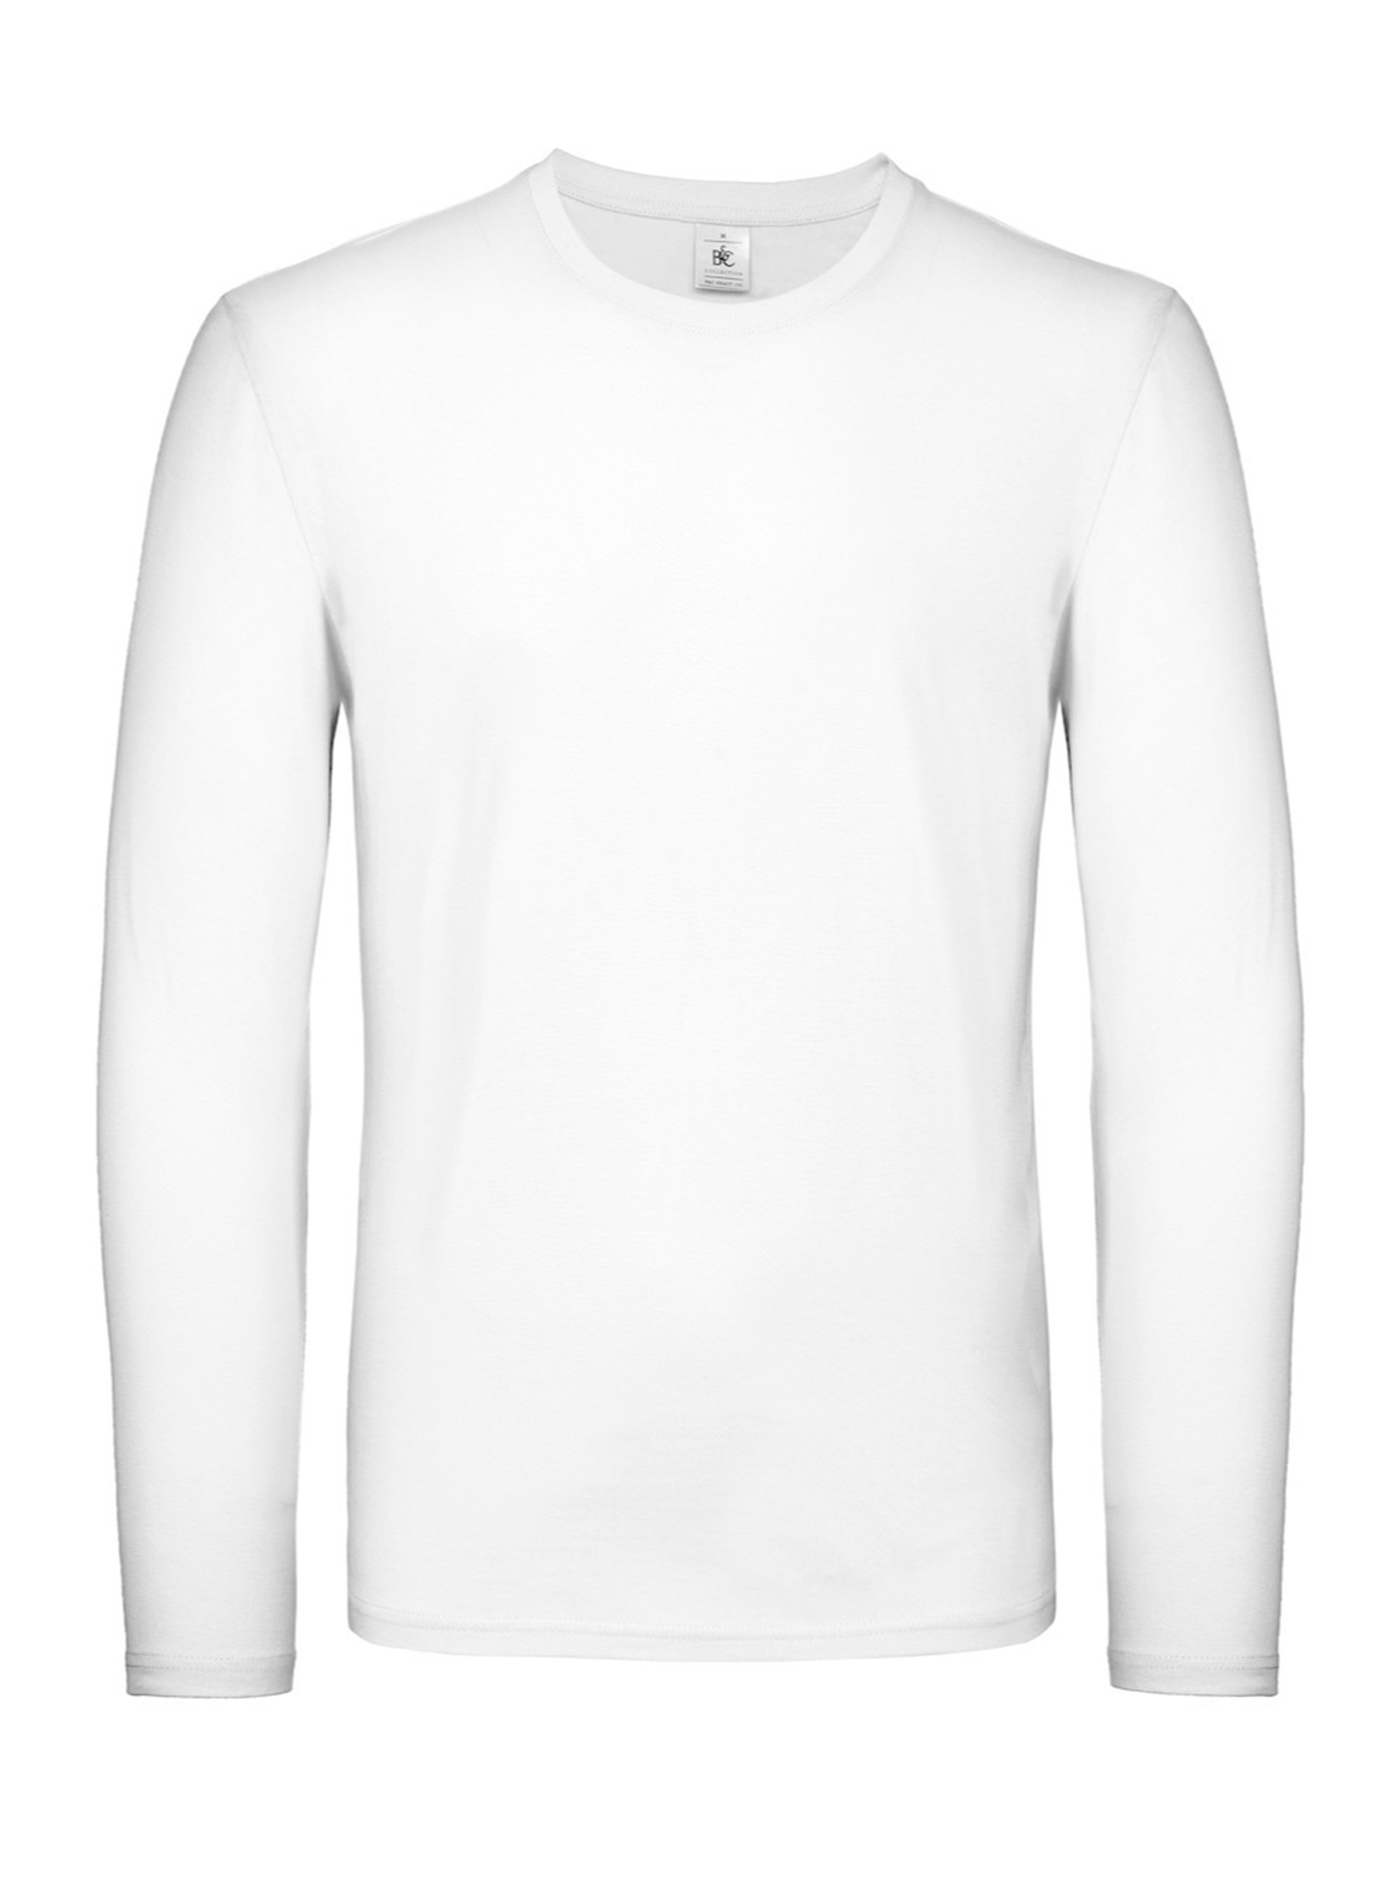 Tričko s dlouhým rukávem B&C Collection - Bílá M